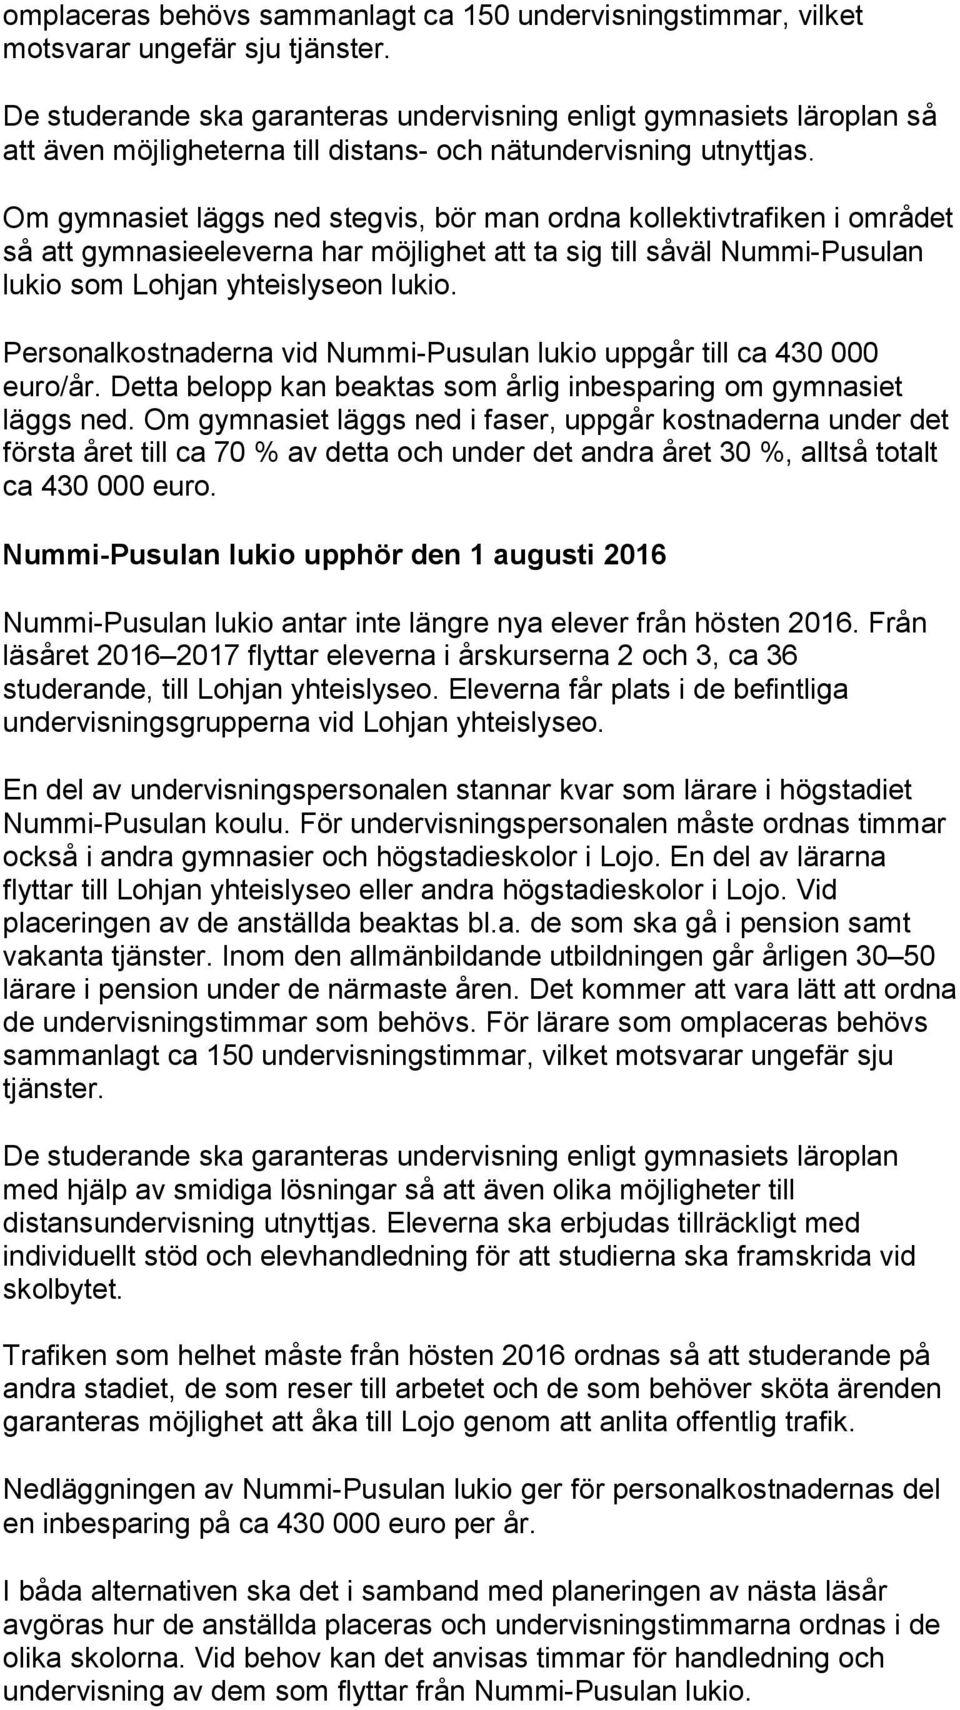 Om gymnasiet läggs ned stegvis, bör man ordna kollektivtrafiken i området så att gymnasieeleverna har möjlighet att ta sig till såväl Nummi-Pusulan som Lohjan yhteislyseon.